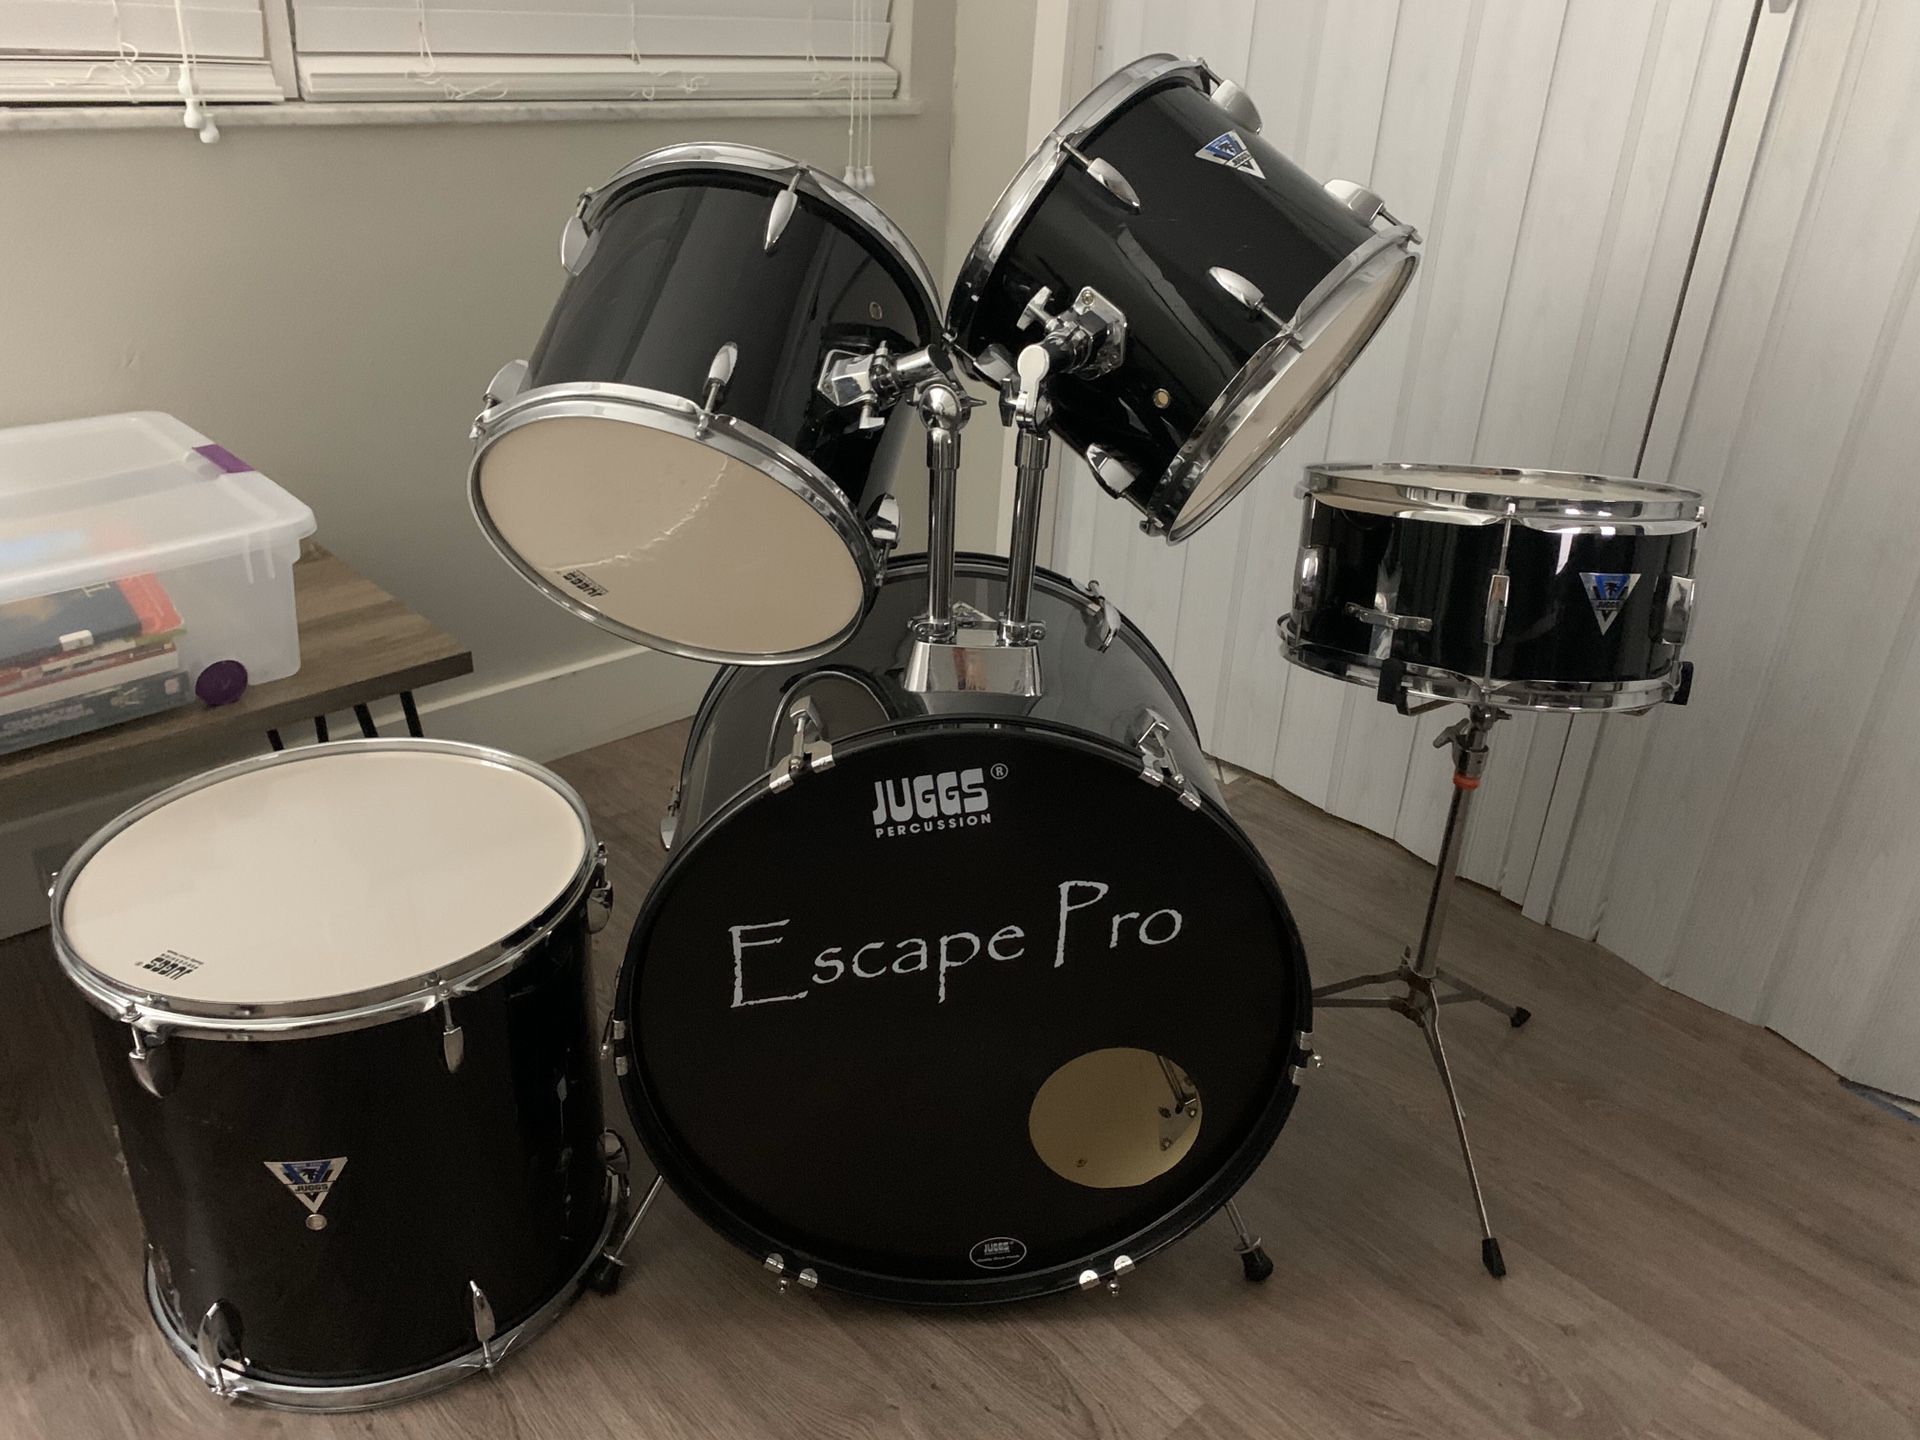 Escape pro drums